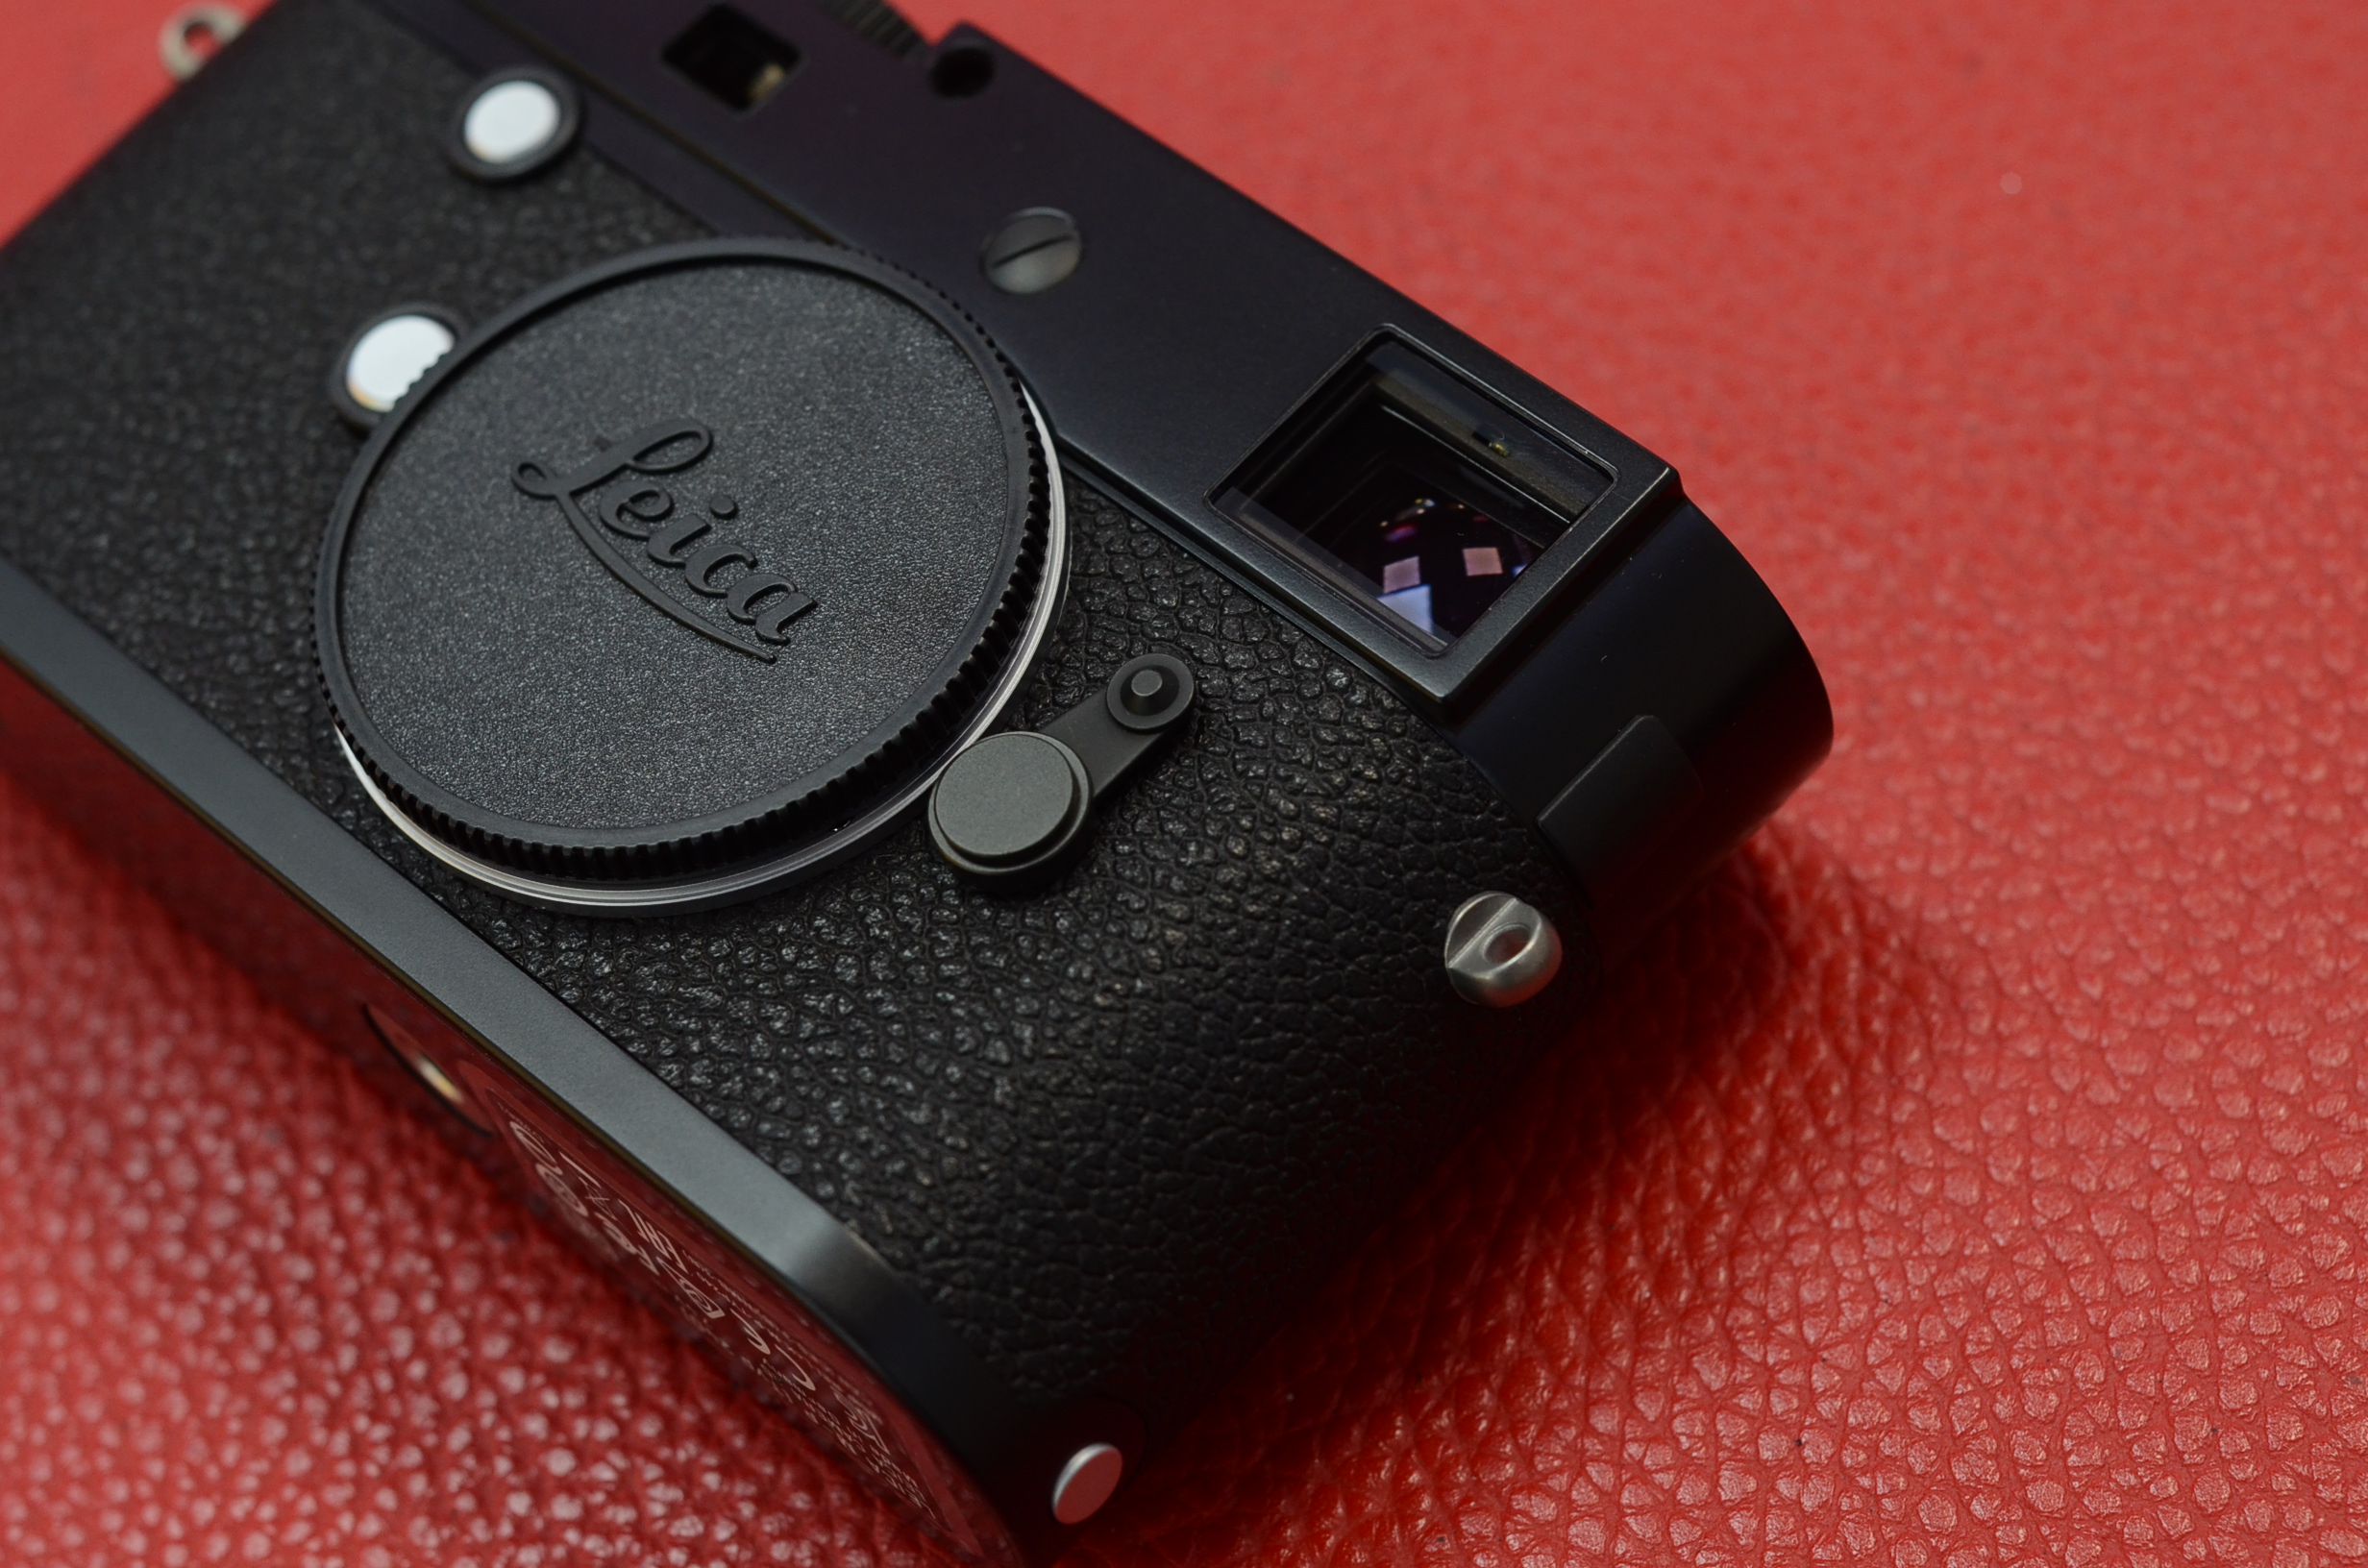 leica 徕卡 m-p typ240 数码旁轴相机 mp240黑色相机